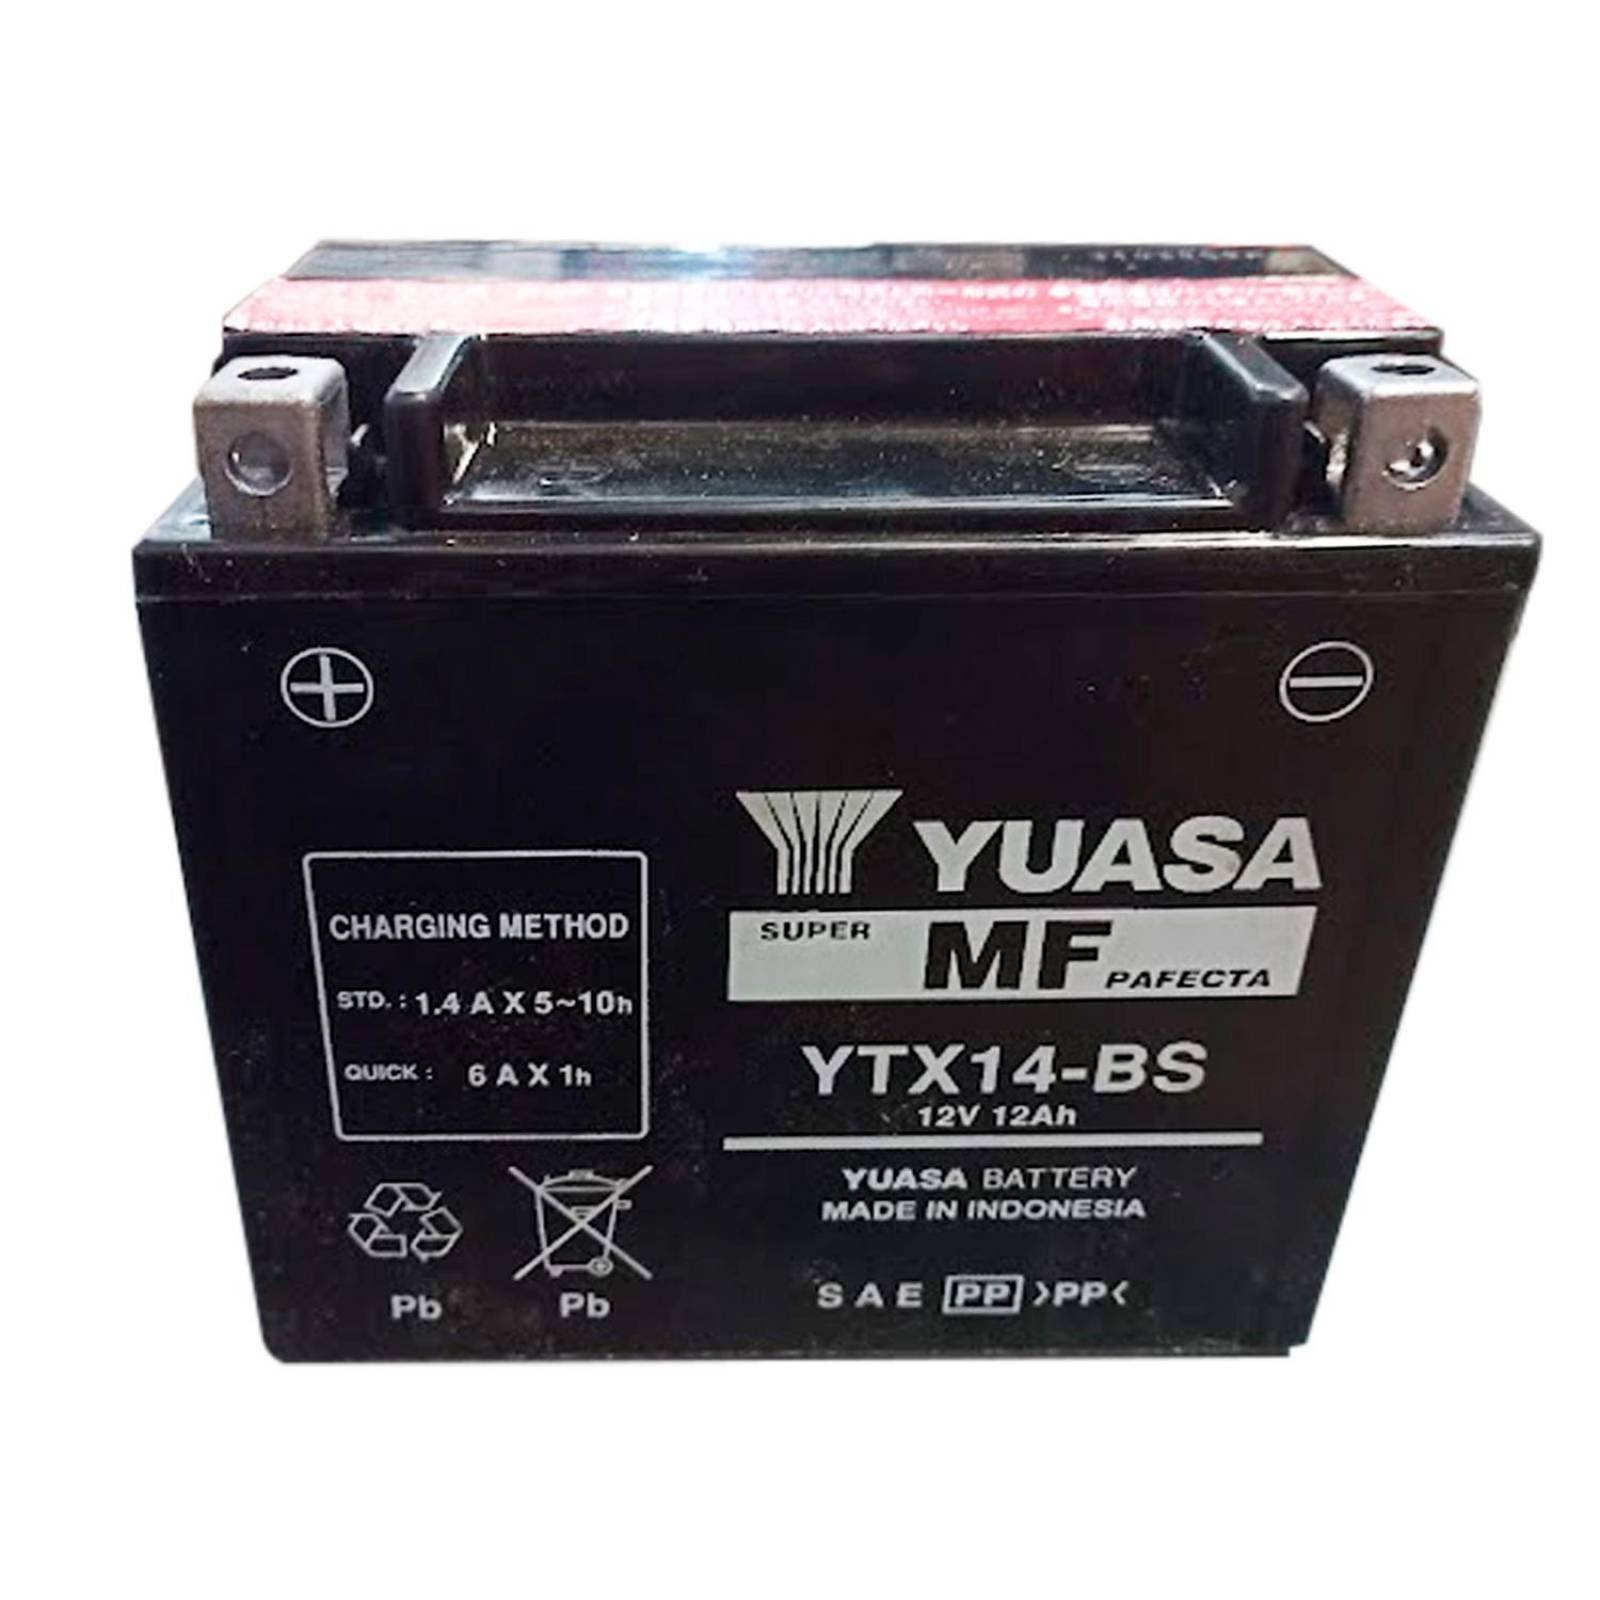 Batería de moto 12V 12AH YUASA - YB12C-A - Precio: 50,75 € - Megataller